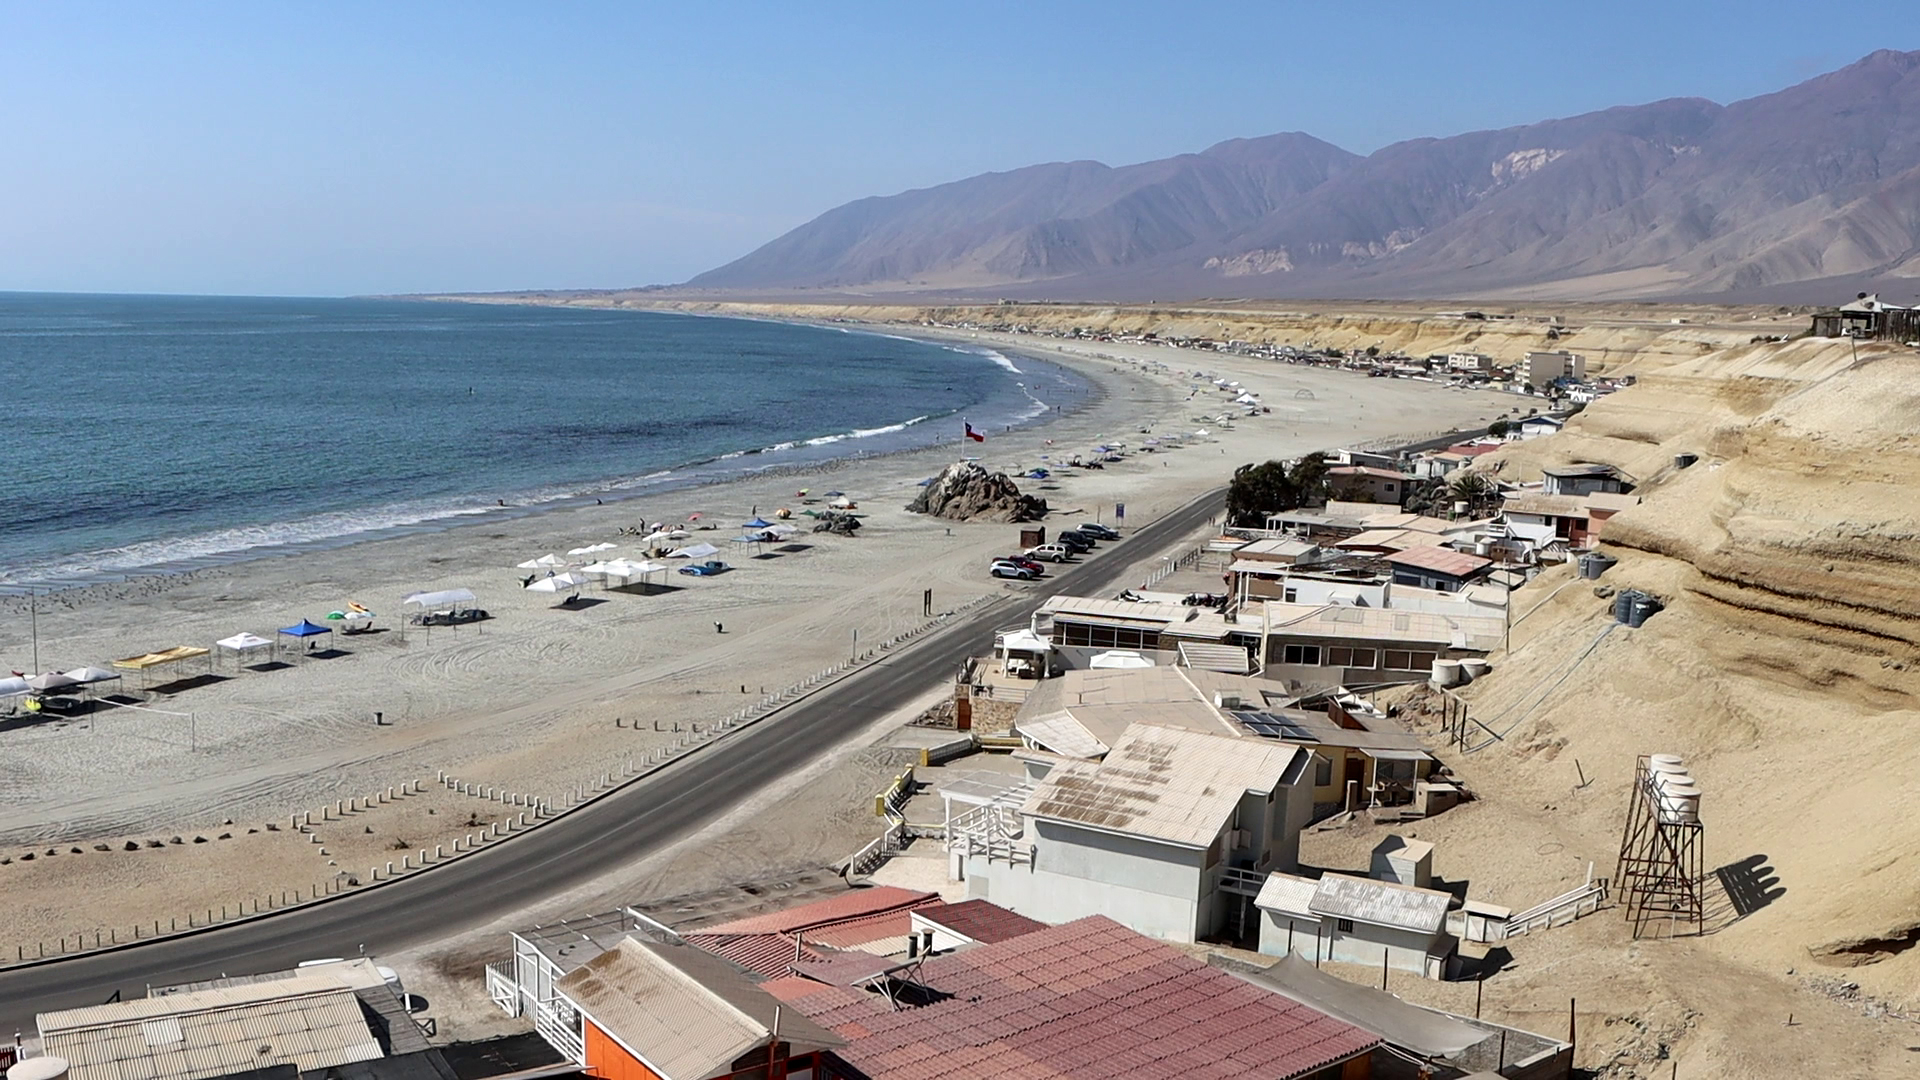 Rescate Hornitos: Fundaciones y organizaciones ecológicas de la ciudad llaman a participar de esta gran limpieza a Playa Hornitos